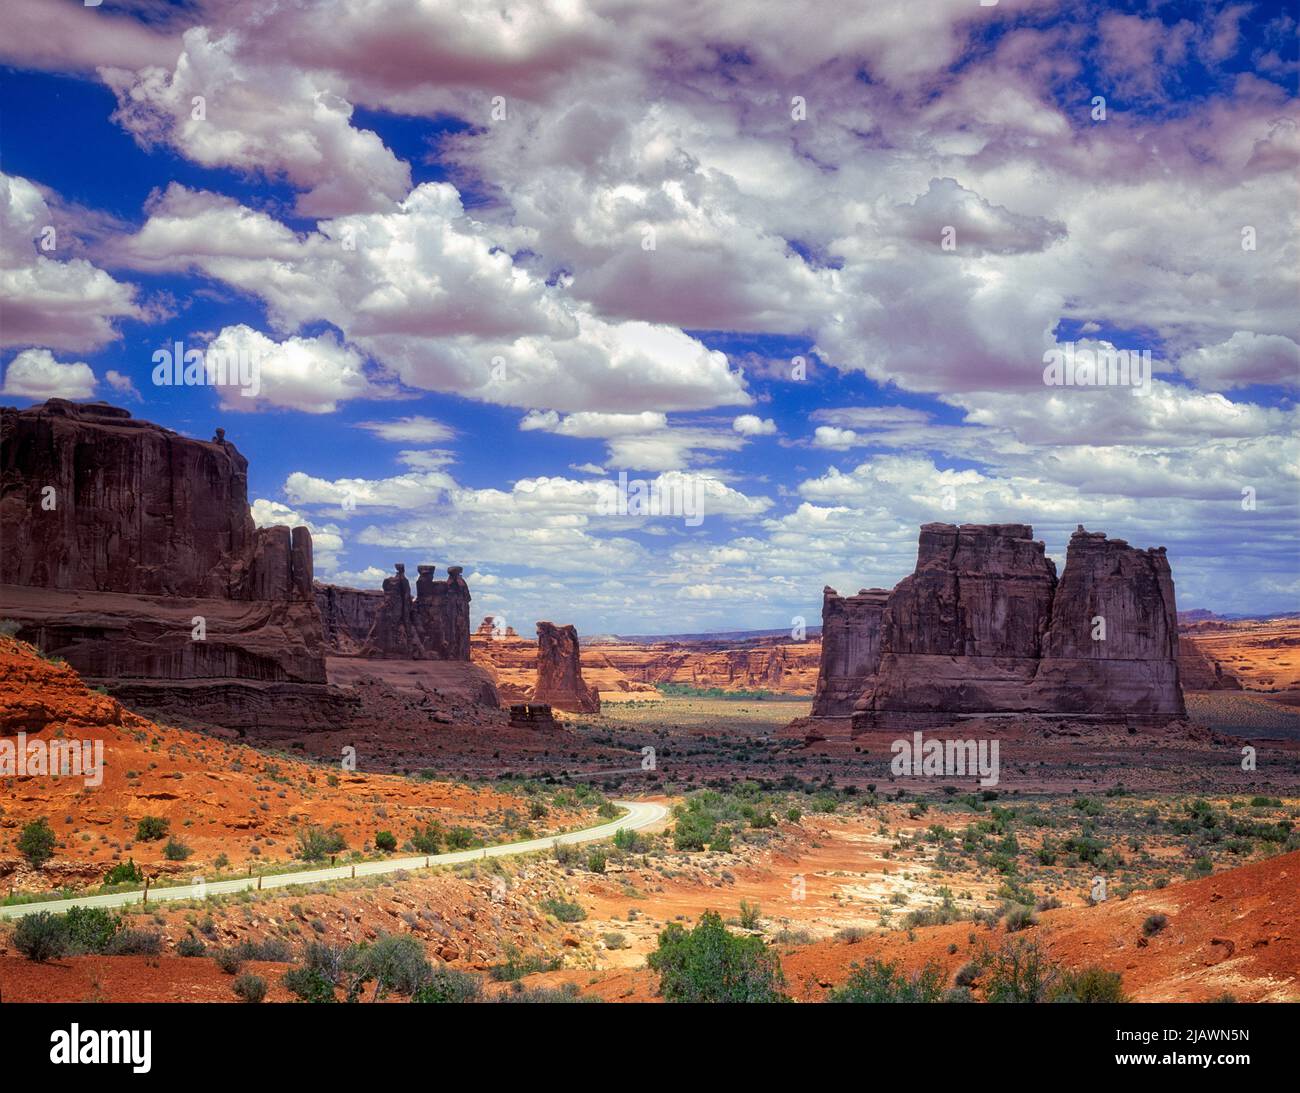 Tours de palais de justice et route avec nuages. Parc national Arches, Utah Banque D'Images